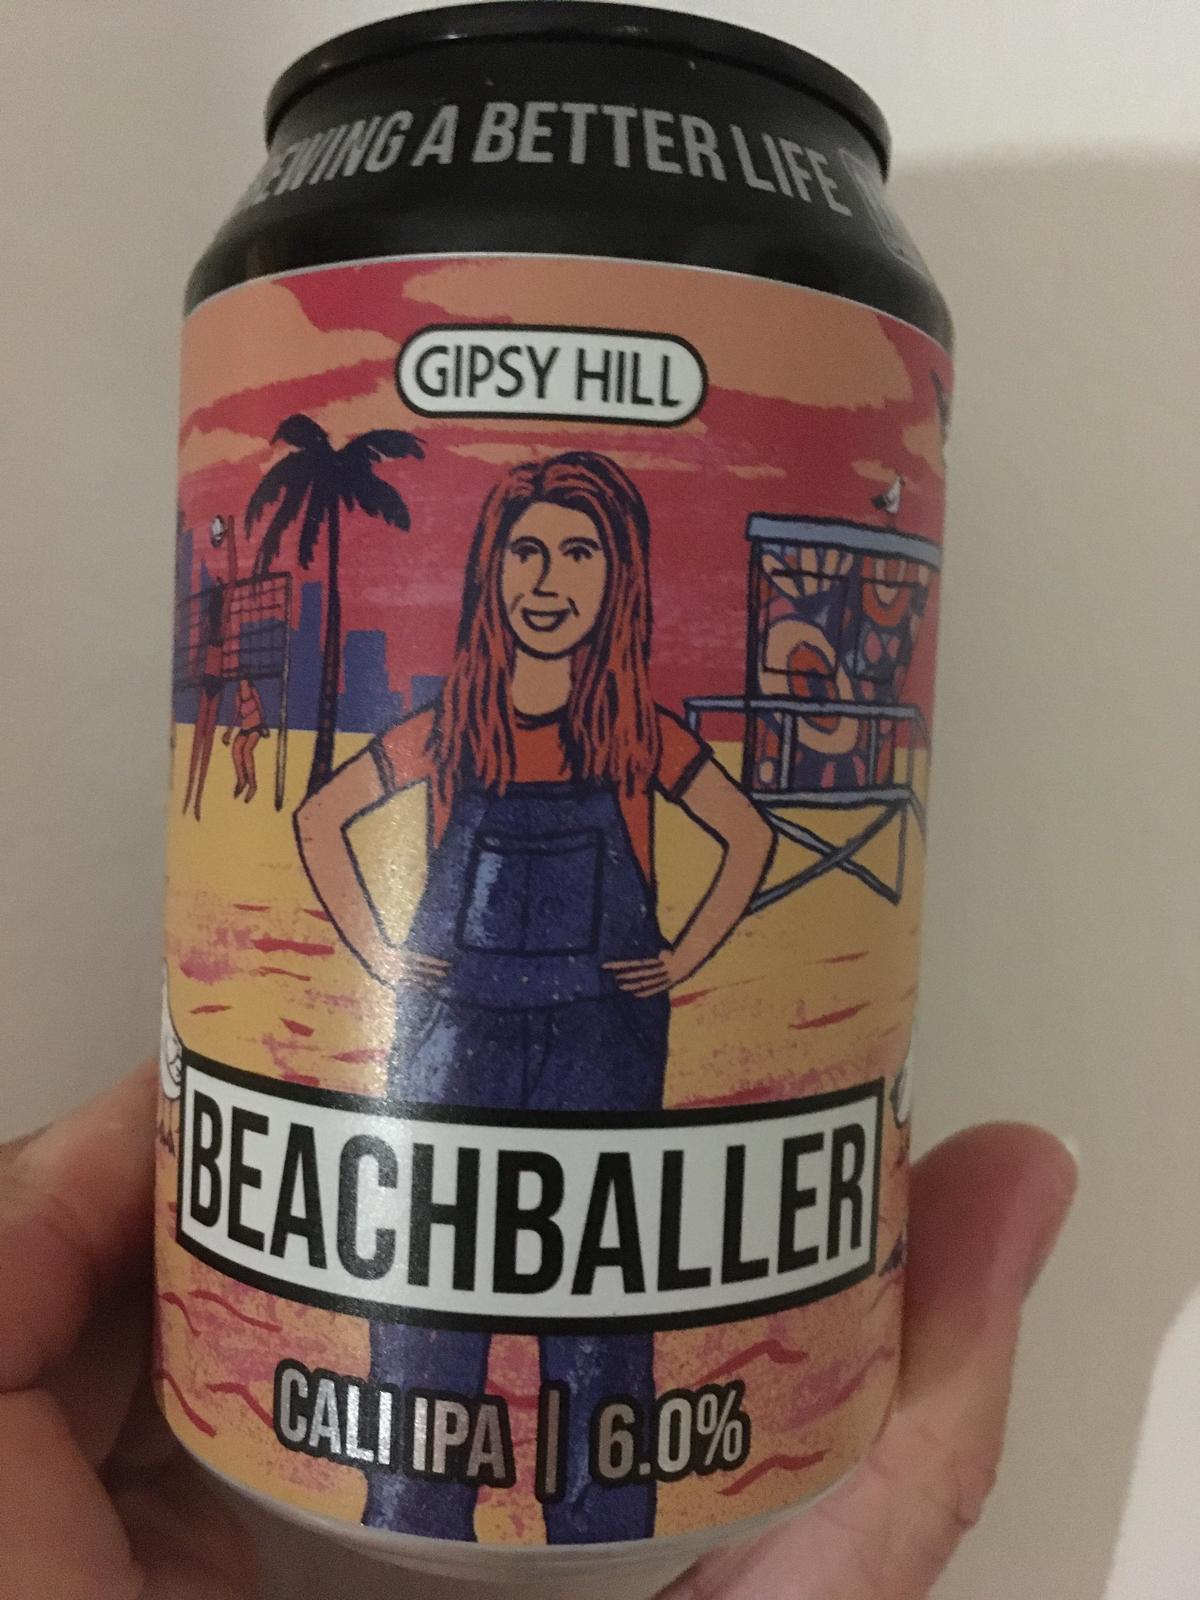 Beachballer